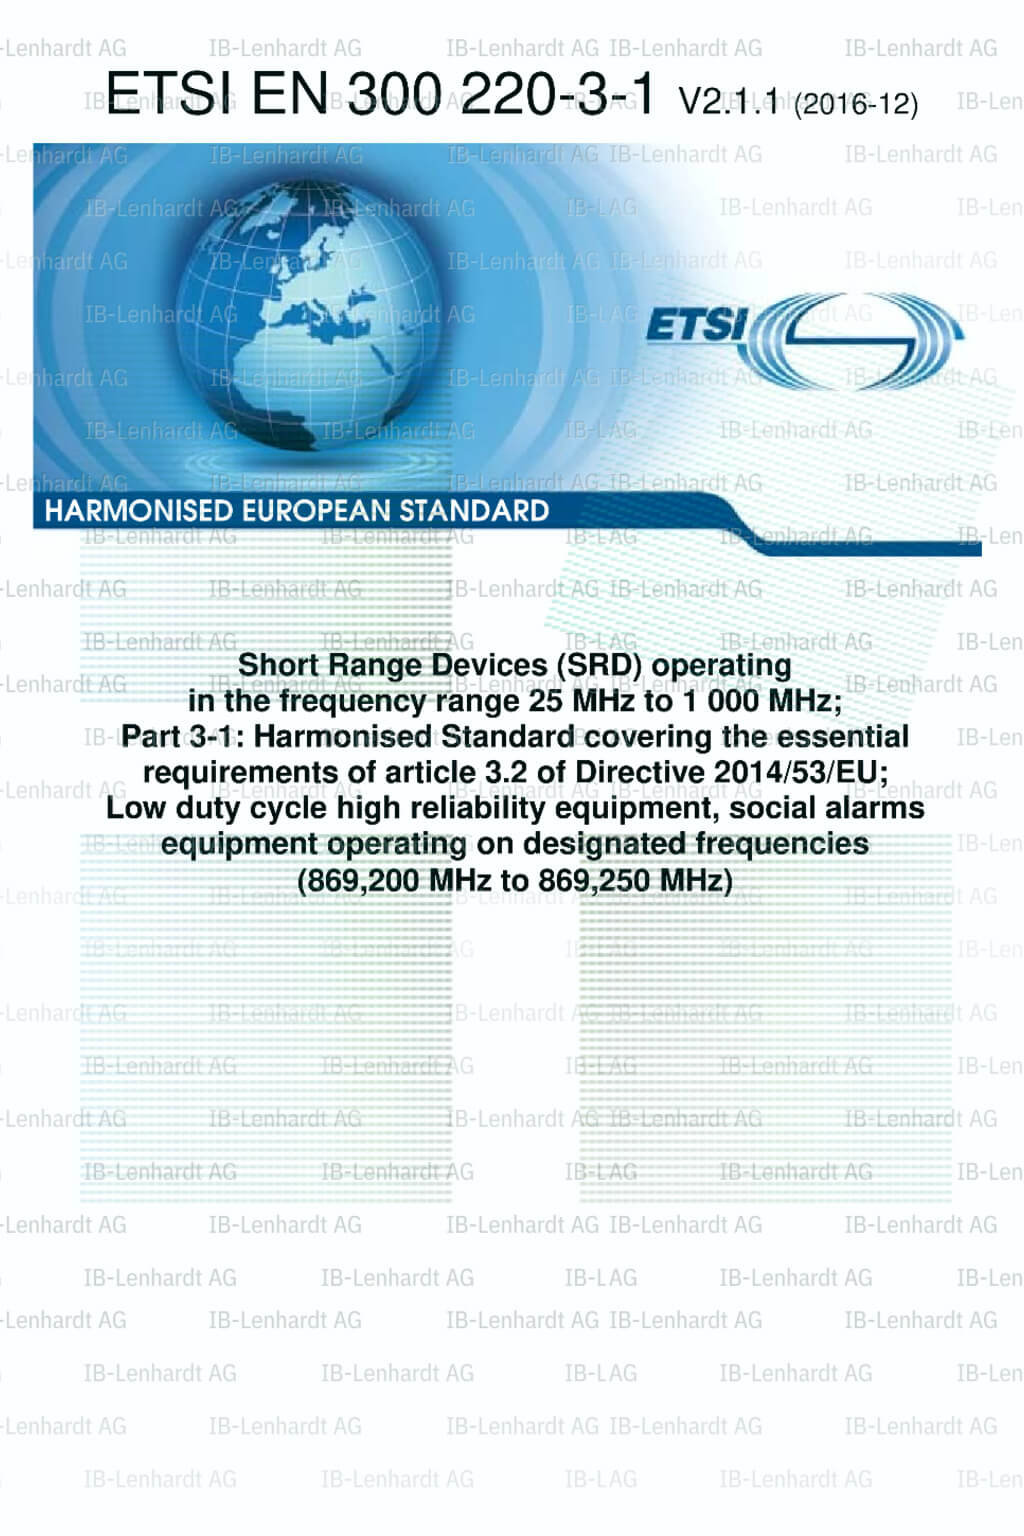 ETSI EN 300 220-3-1 V2.1.1 